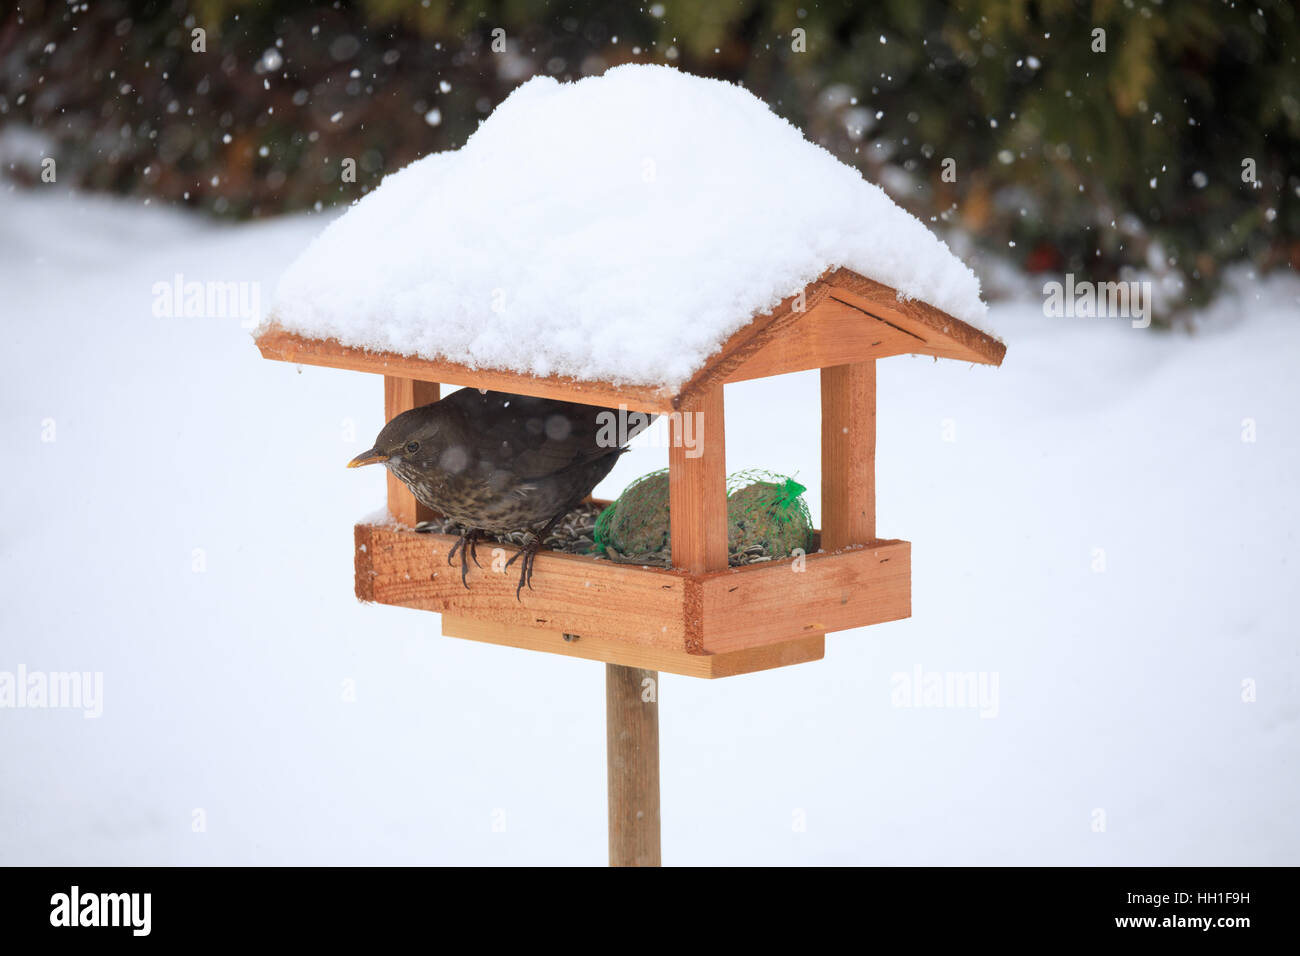 Femmina di merlo comune (Turdus merula) alimentazione in modo semplice in casa legno Bird Feeder, birdhouse installato su giardino d inverno in giornata nevosa Foto Stock